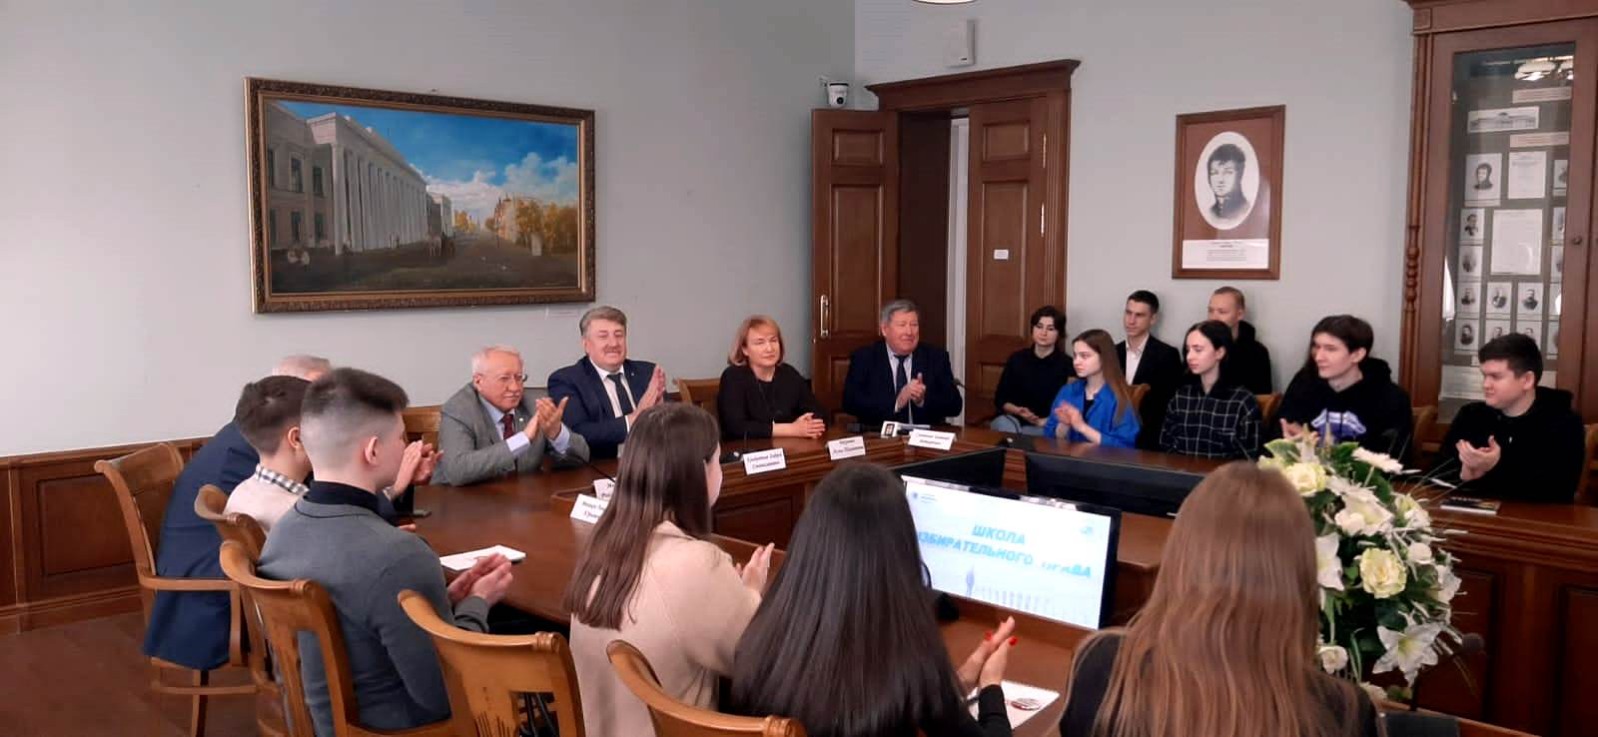 13 февраля на Юридическом факультете Казанского федерального университета состоялось открытие Школы избирательного права